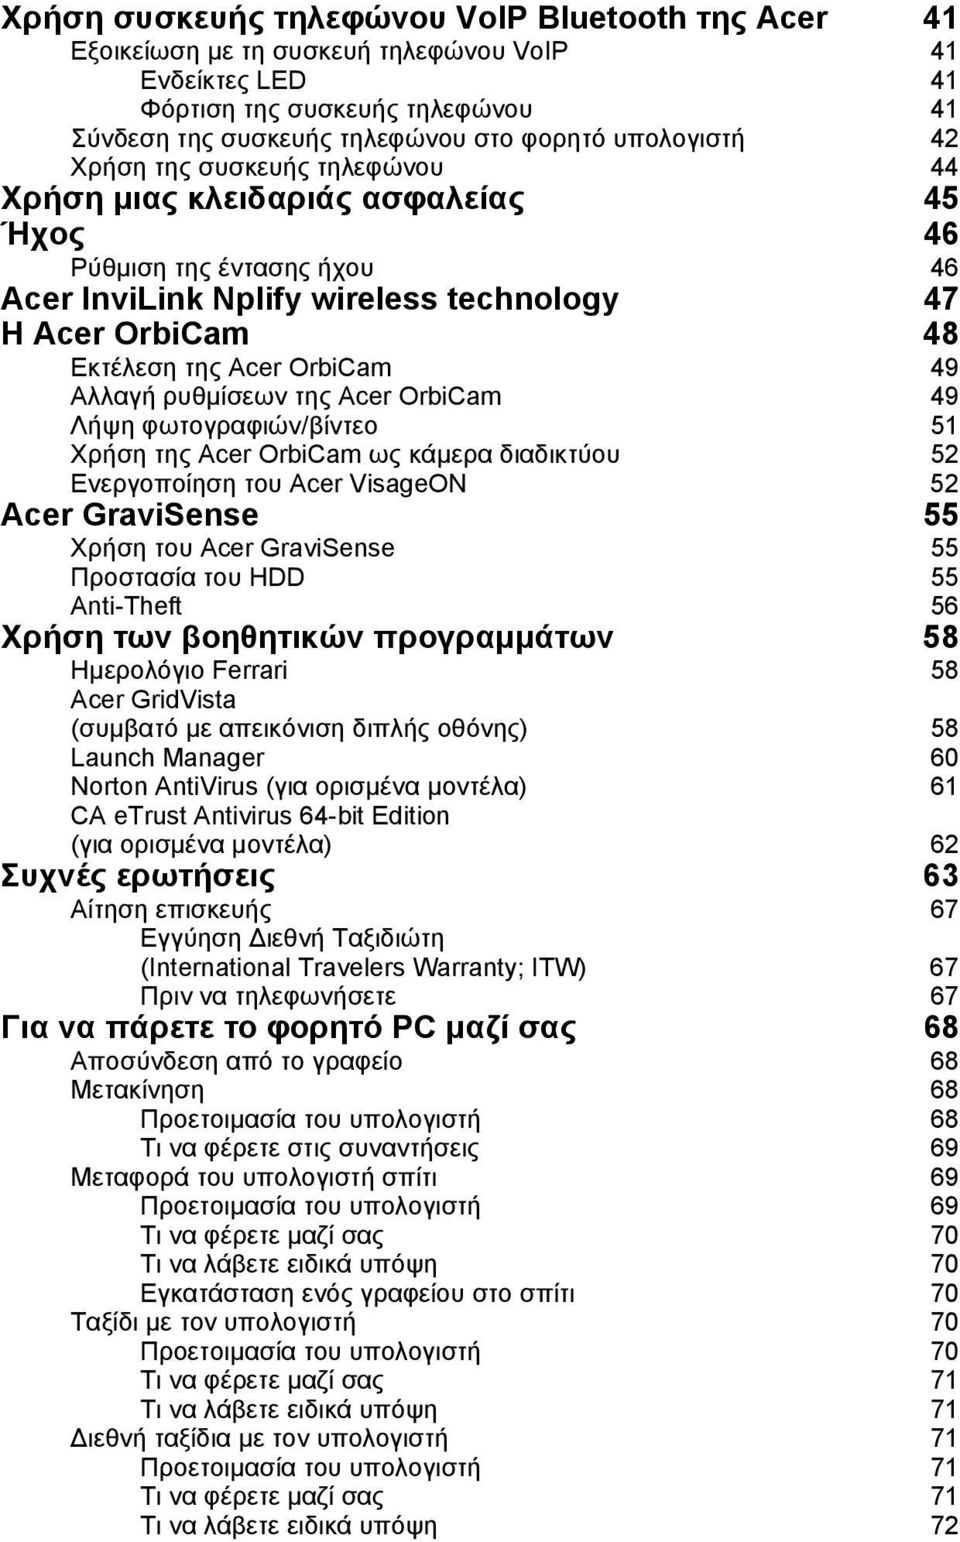 Αλλαγή ρυθµίσεων της Acer OrbiCam 49 Λήψη φωτογραφιών/βίντεο 51 Χρήση της Acer OrbiCam ως κάµερα διαδικτύου 52 Ενεργοποίηση του Acer VisageON 52 Acer GraviSense 55 Χρήση του Acer GraviSense 55